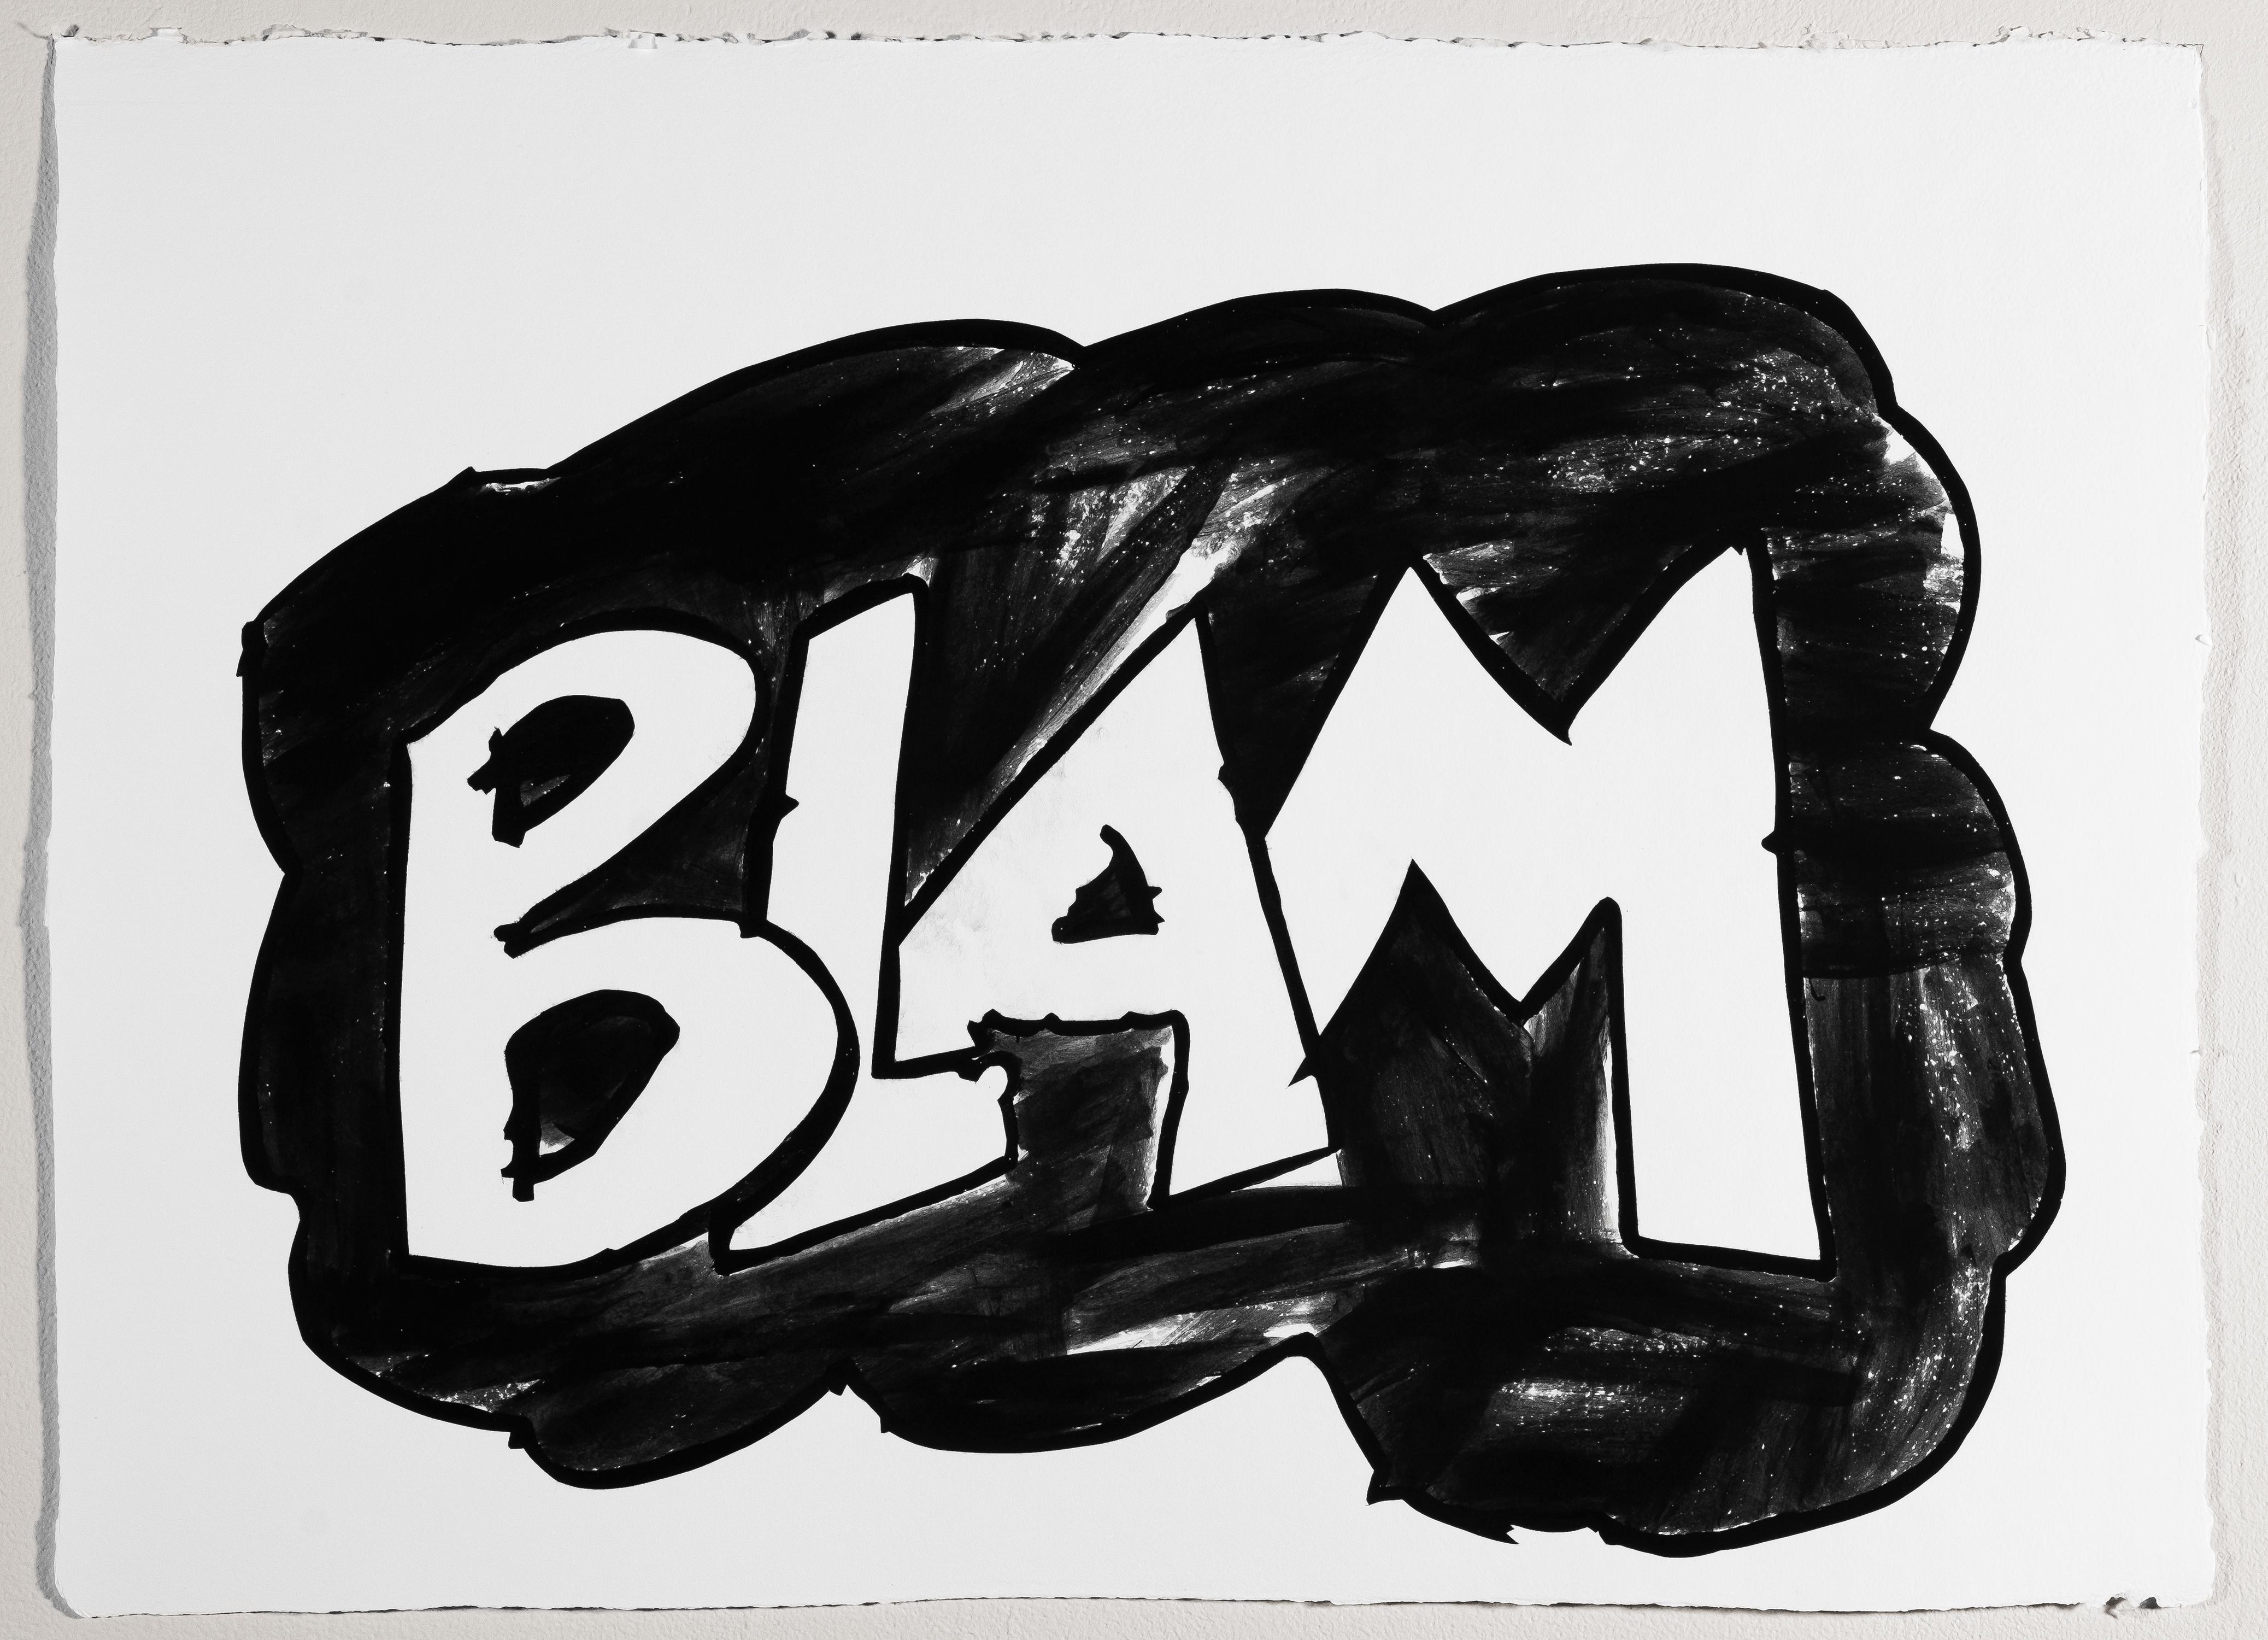 Blam